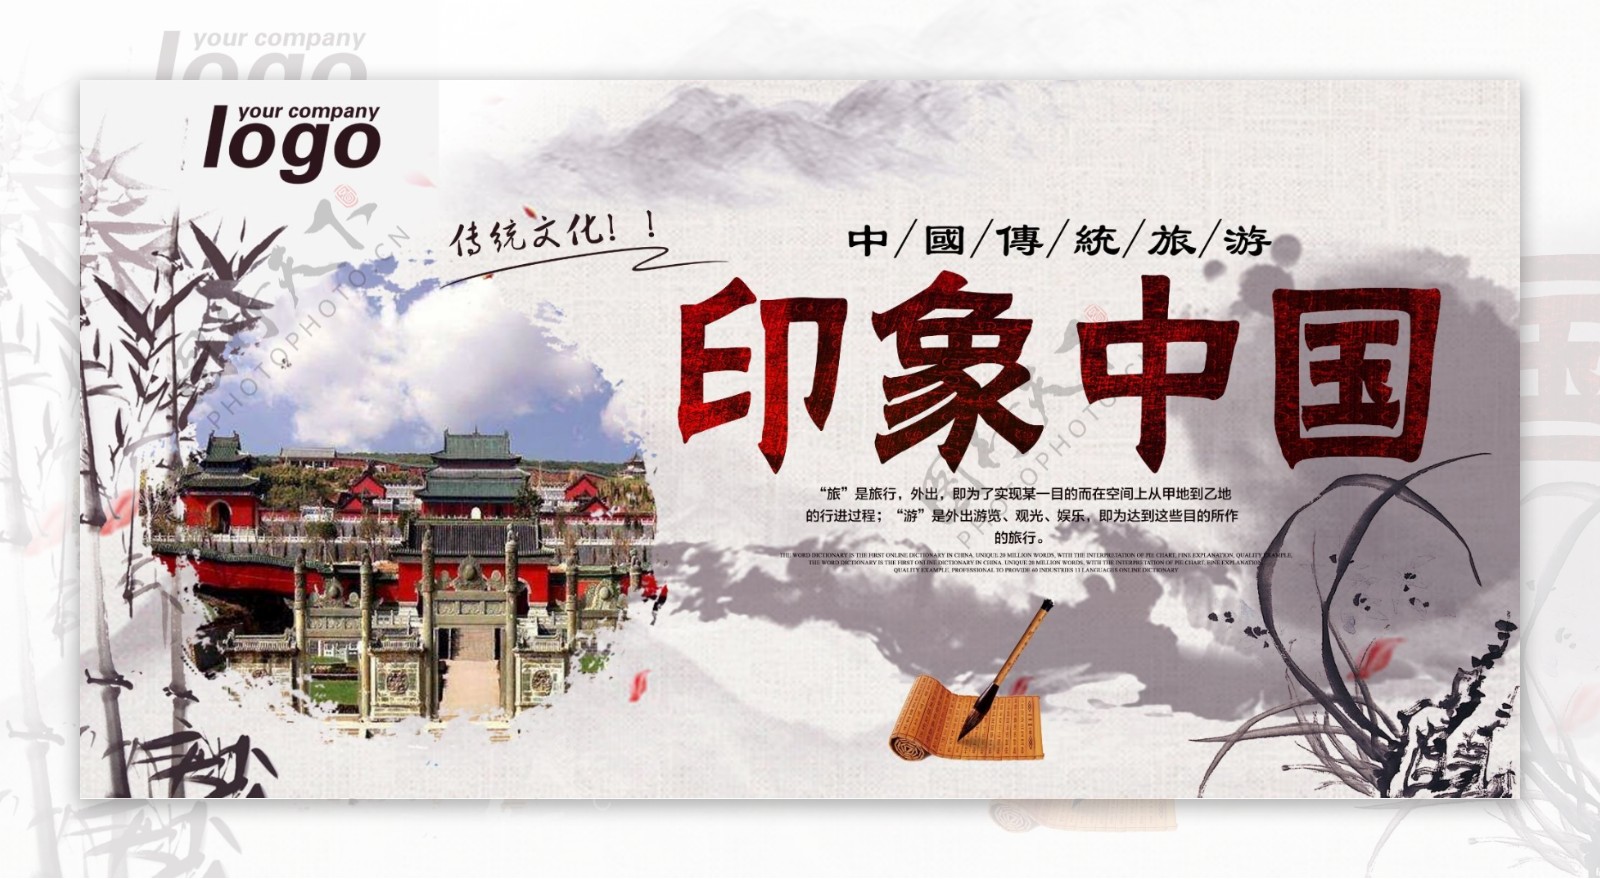 中国印象旅游展板设计下载